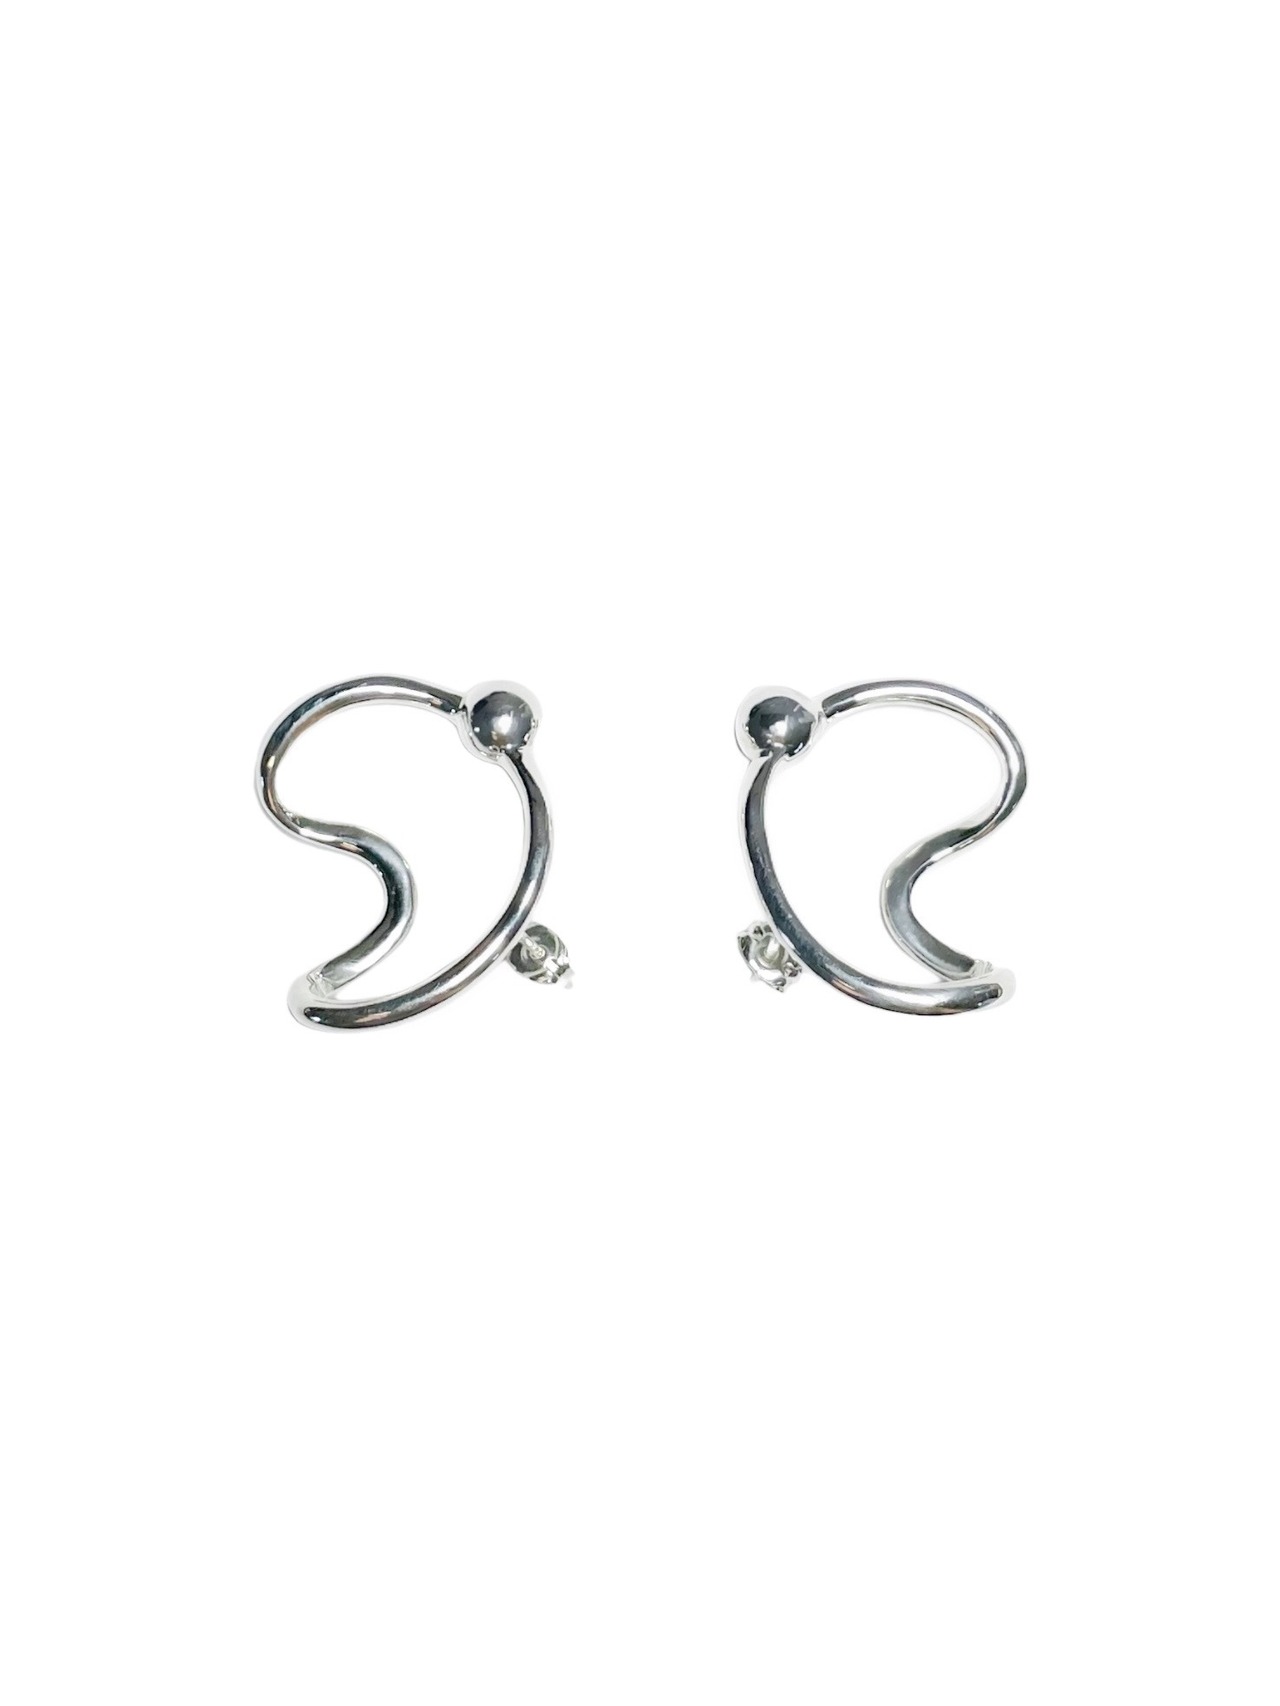 #023 (embrace earrings)　※SINGLE silver925 earring